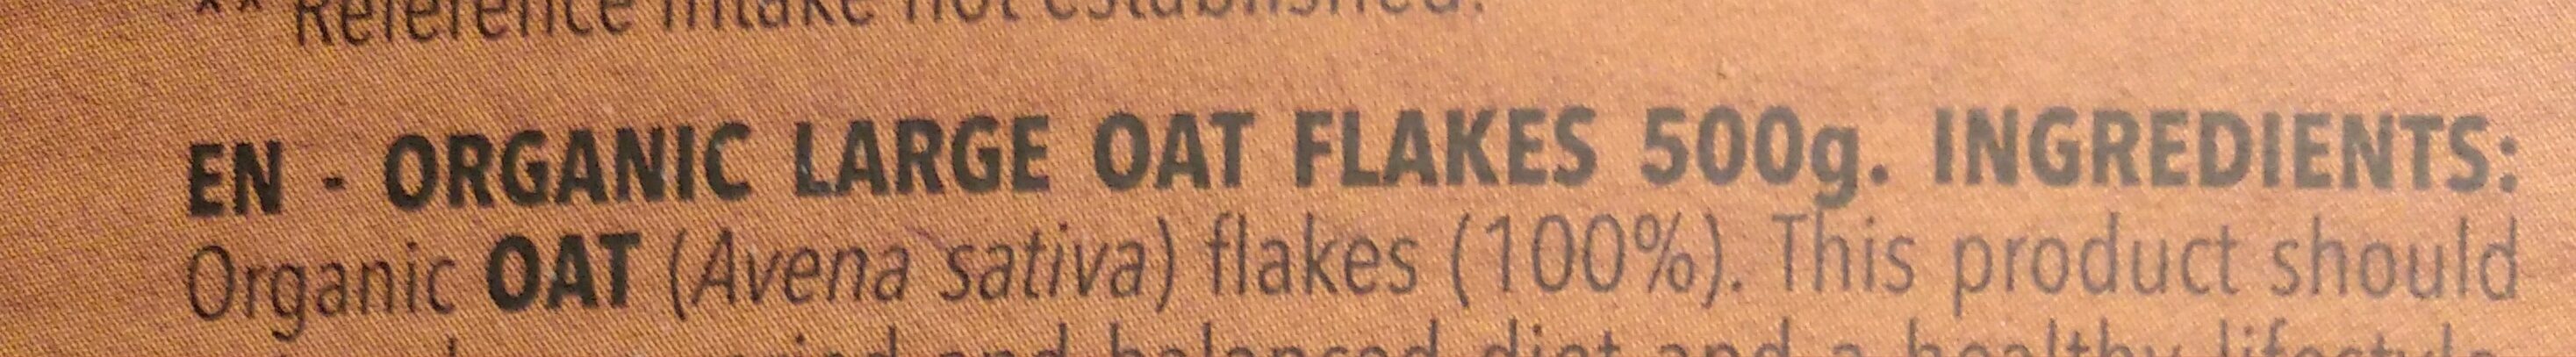 Organic large oat flakes - Ingredienti